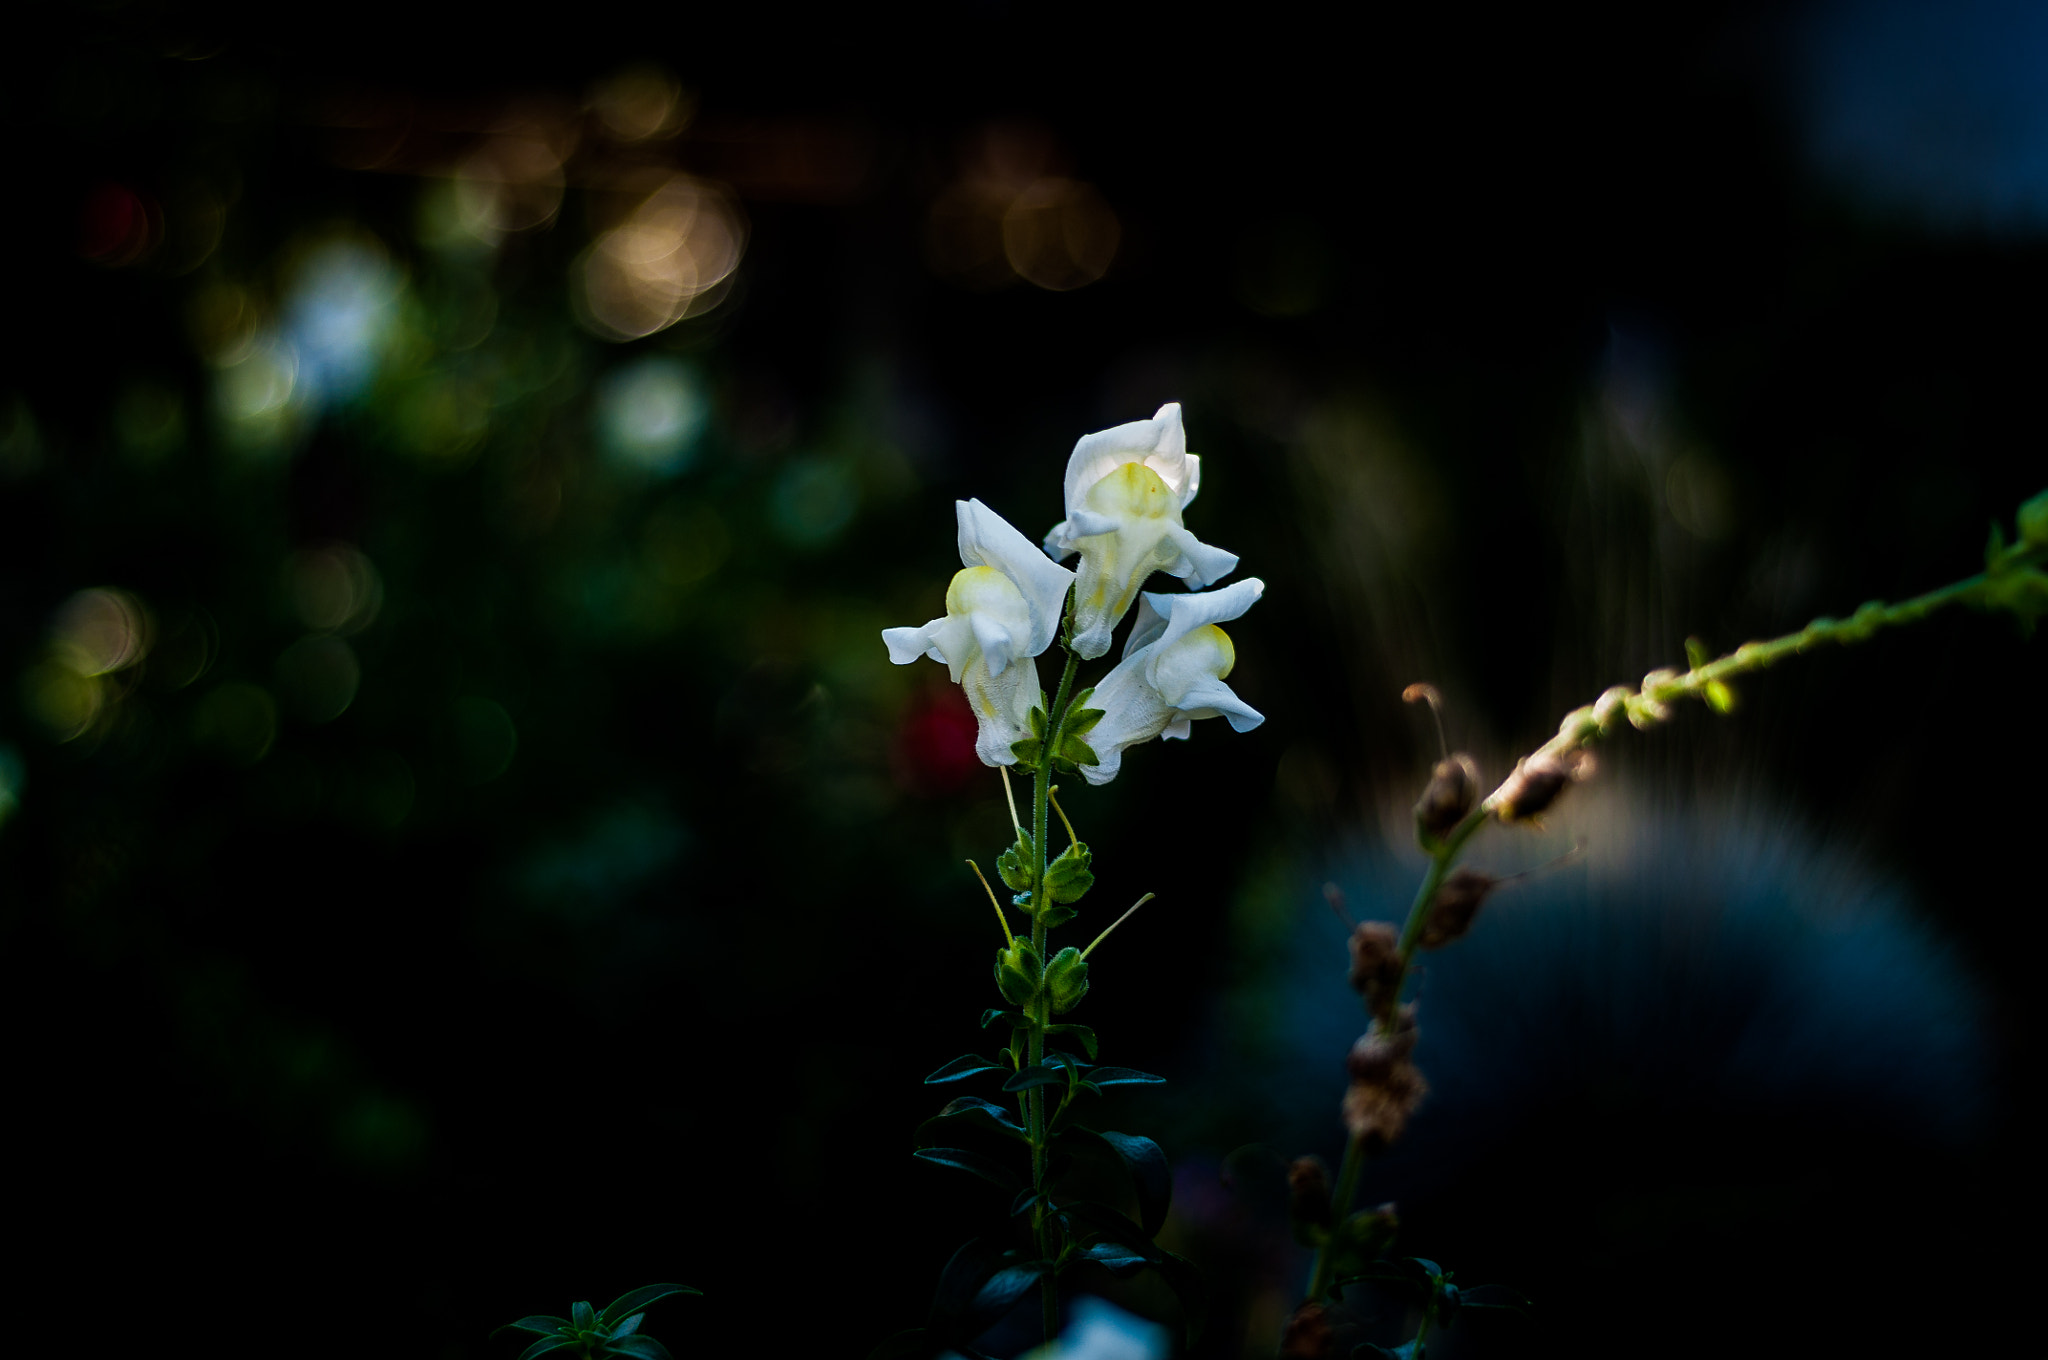 Nikon D5000 + AF Nikkor 50mm f/1.8 sample photo. Sunset flower photography